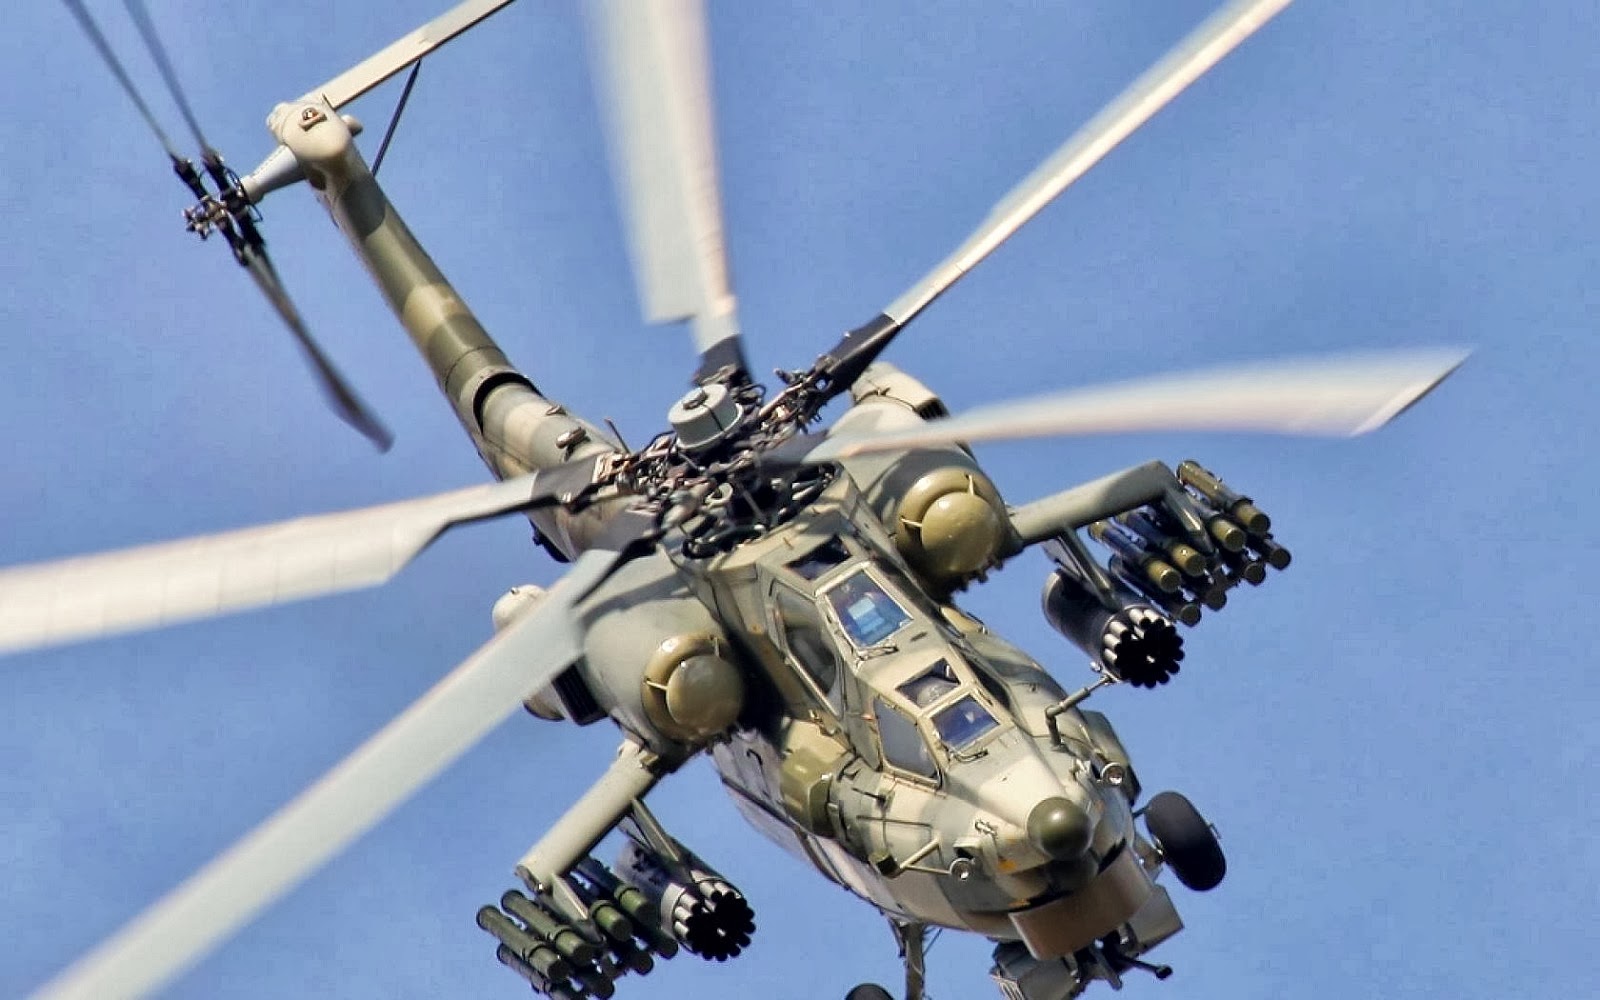 المي 28 "الصياد الليلي" للتصدير لكل من الجزائر و العراق و مصر Mi-28NE+Russia+to+Develop+5th-Generation+Attack+Helicopter+by+2017